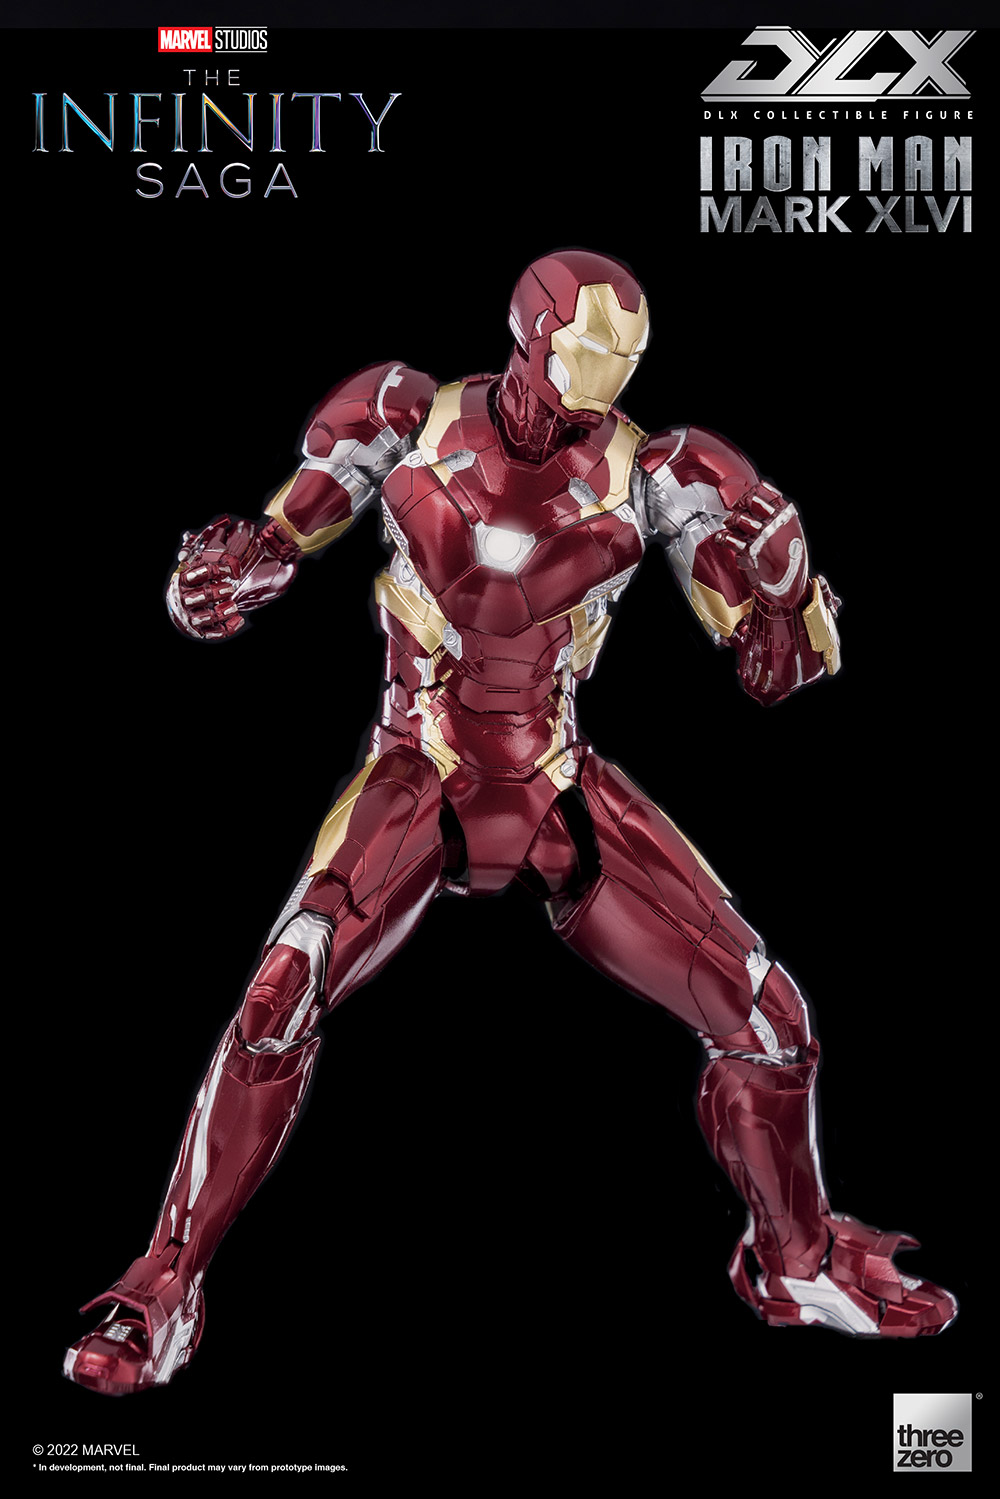 DLX Iron Man Mark 46(DLX アイアンマン・マーク46) Marvel Studios' The Infinity Saga(マーベル・スタジオ『インフィニティ・サーガ』) 1/12 完成品 可動フィギュア threezero(スリーゼロ)